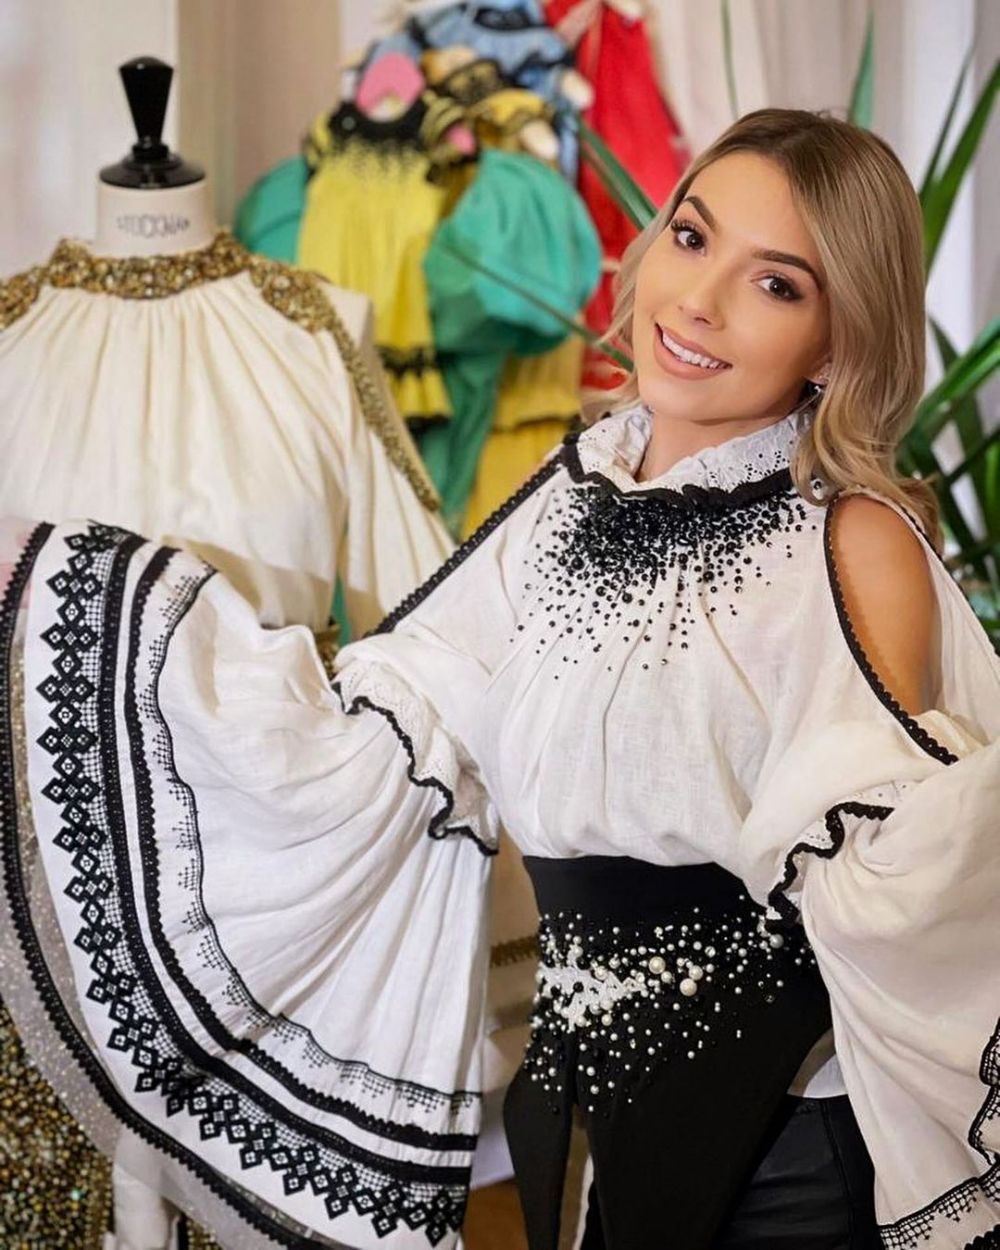 Sportiva din România care a făcut senzație la Gala Sportivul Anului. A apărut îmbrăcată într-o rochie spectaculoasă _23